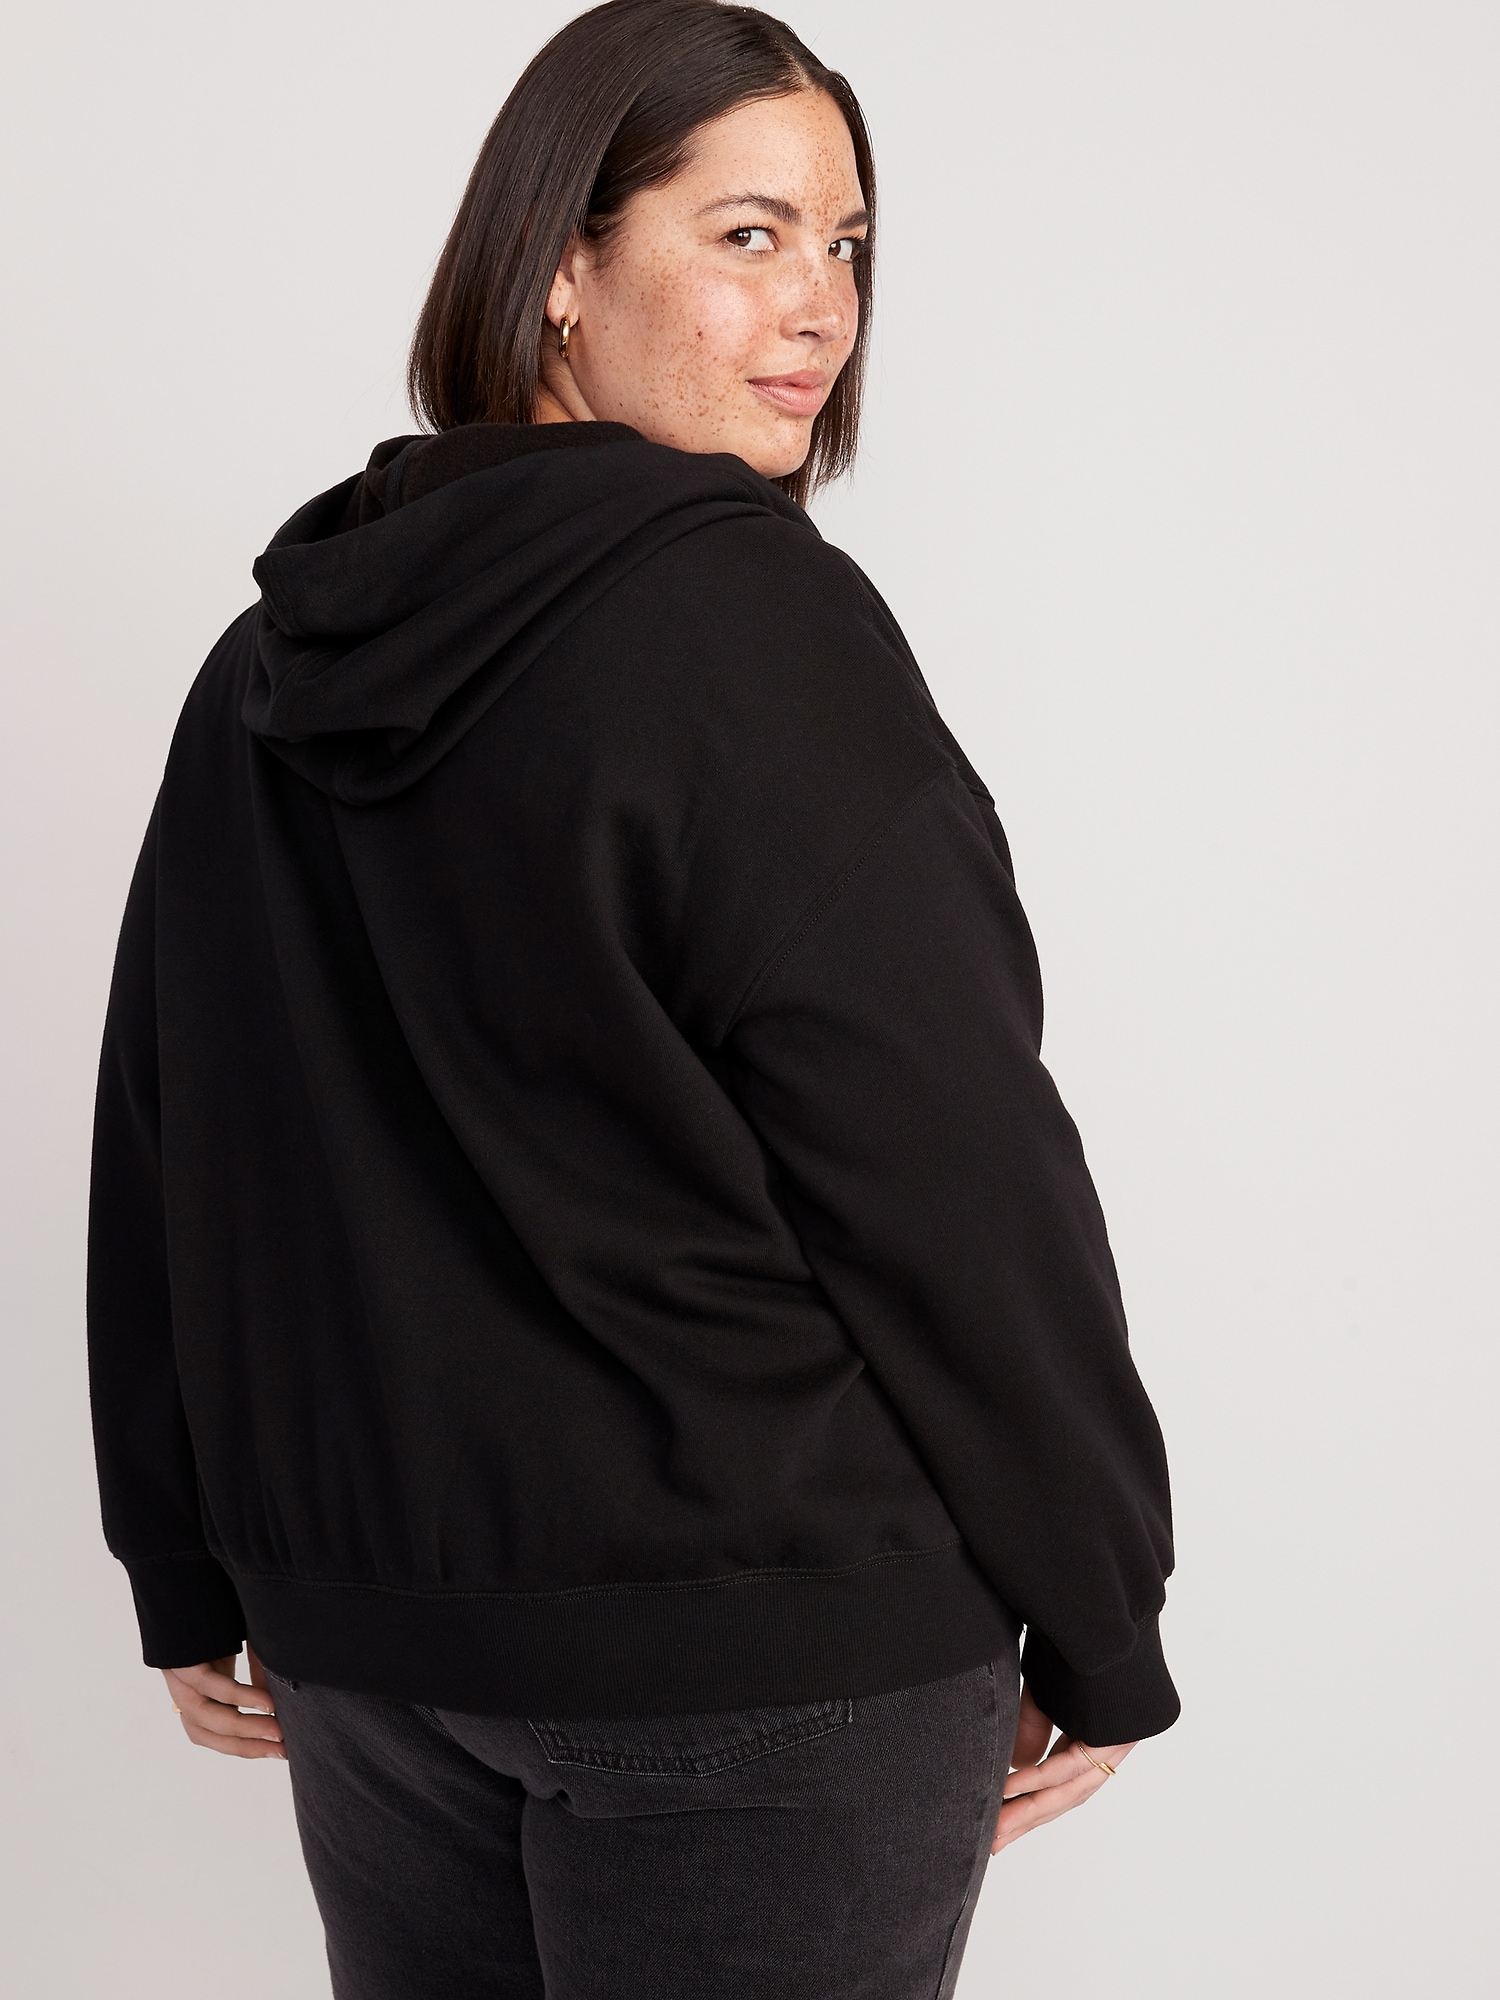 Slouchy Fleece Full-Zip Hoodie for Women | Old Navy